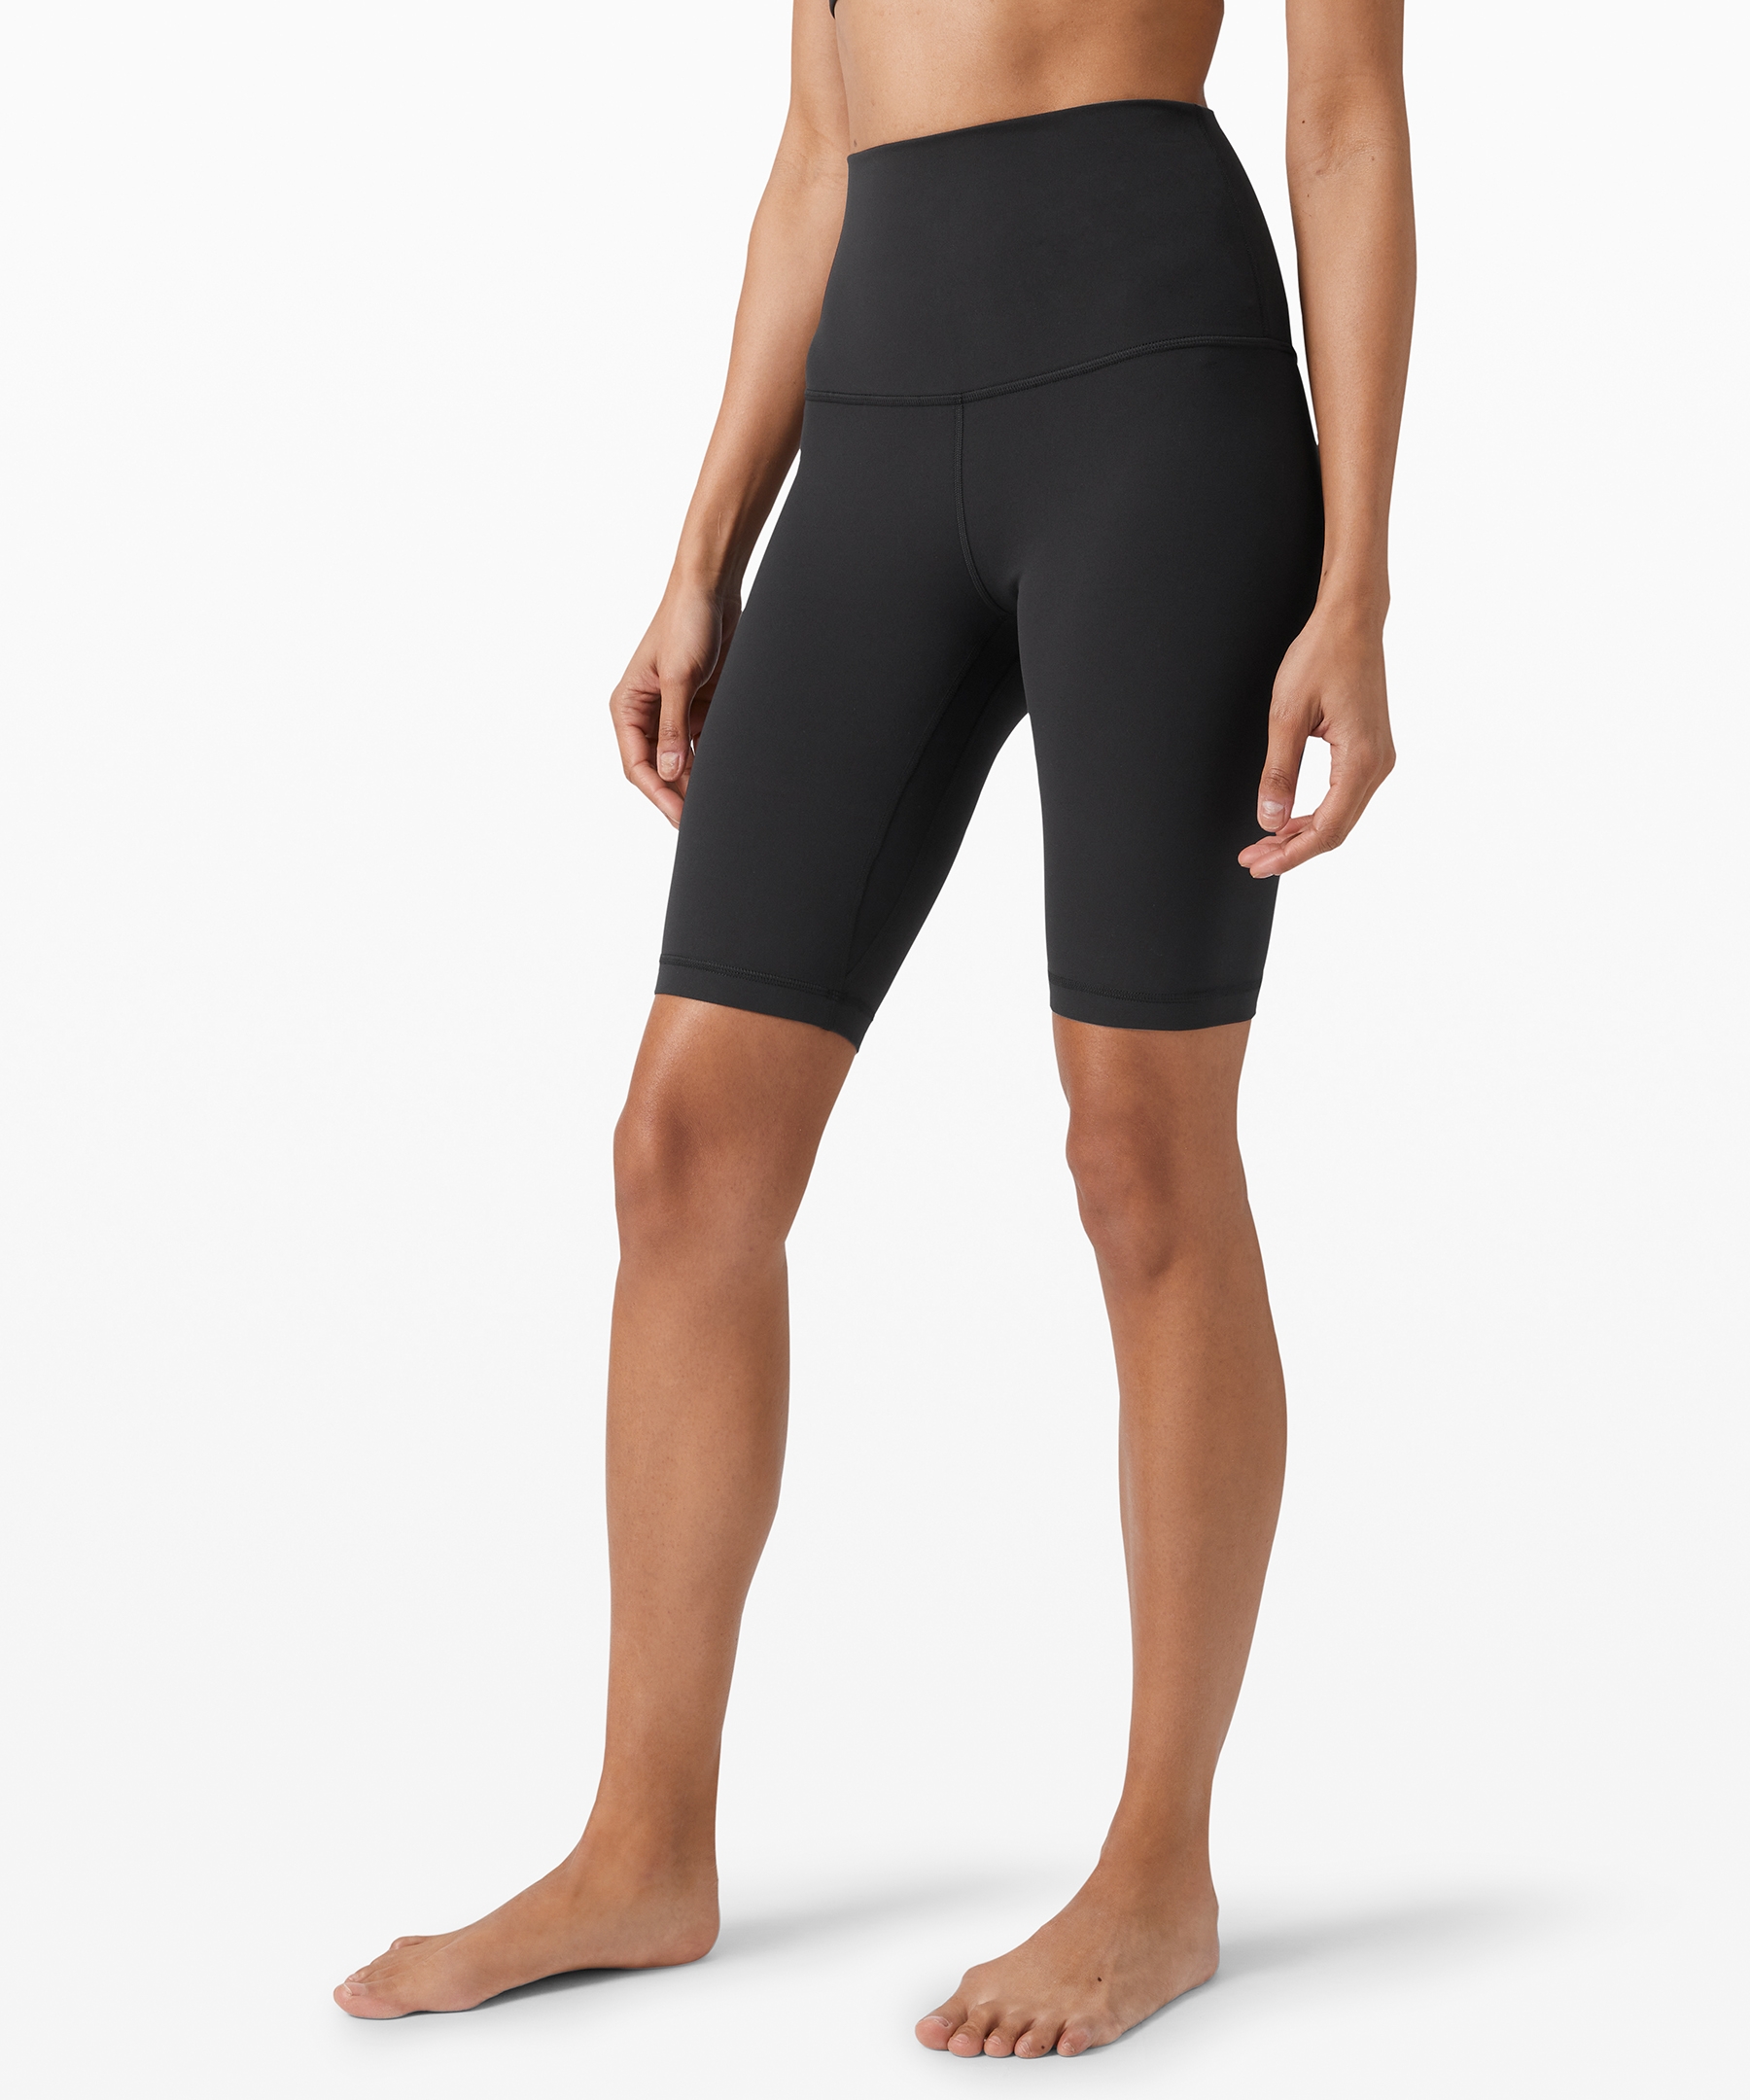 Align™ 女士运动超高腰紧身短裤10 瑜伽裤裸感